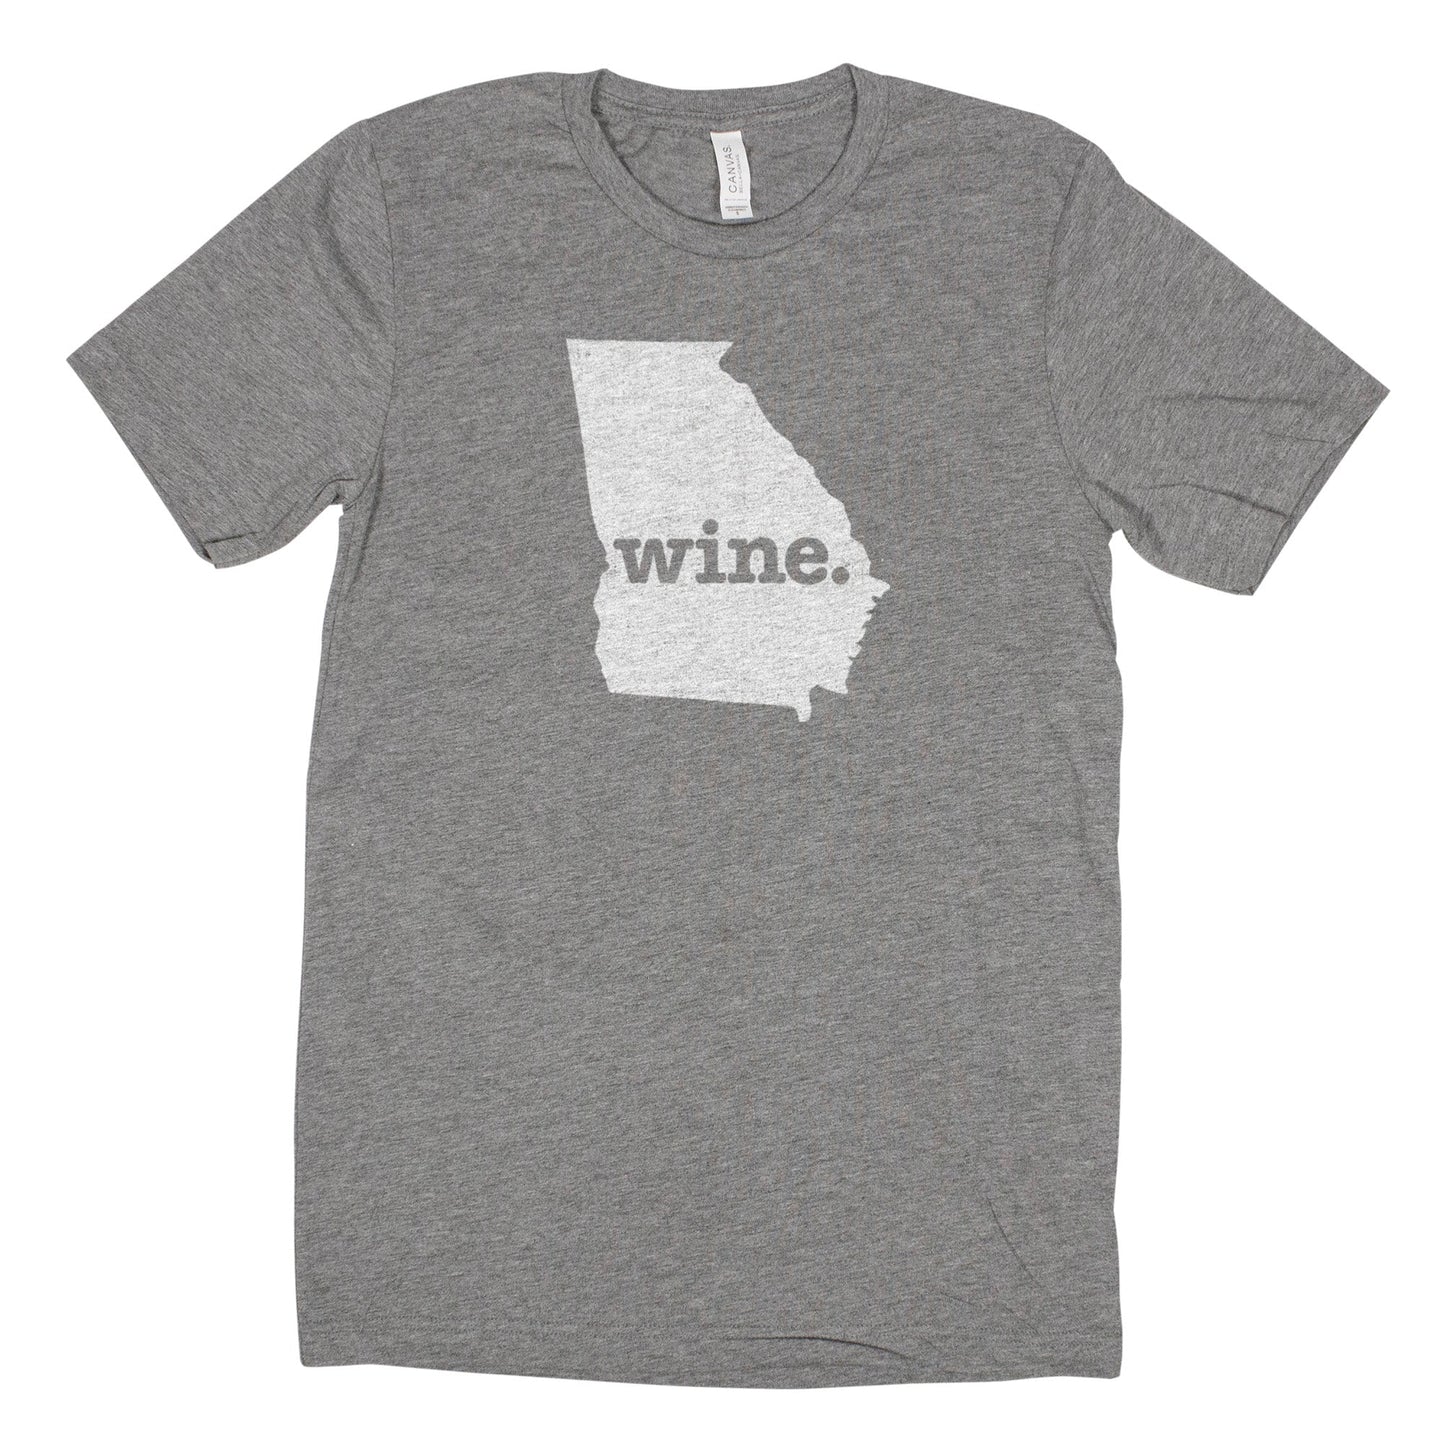 wine. Men's Unisex T-Shirt - Georgia